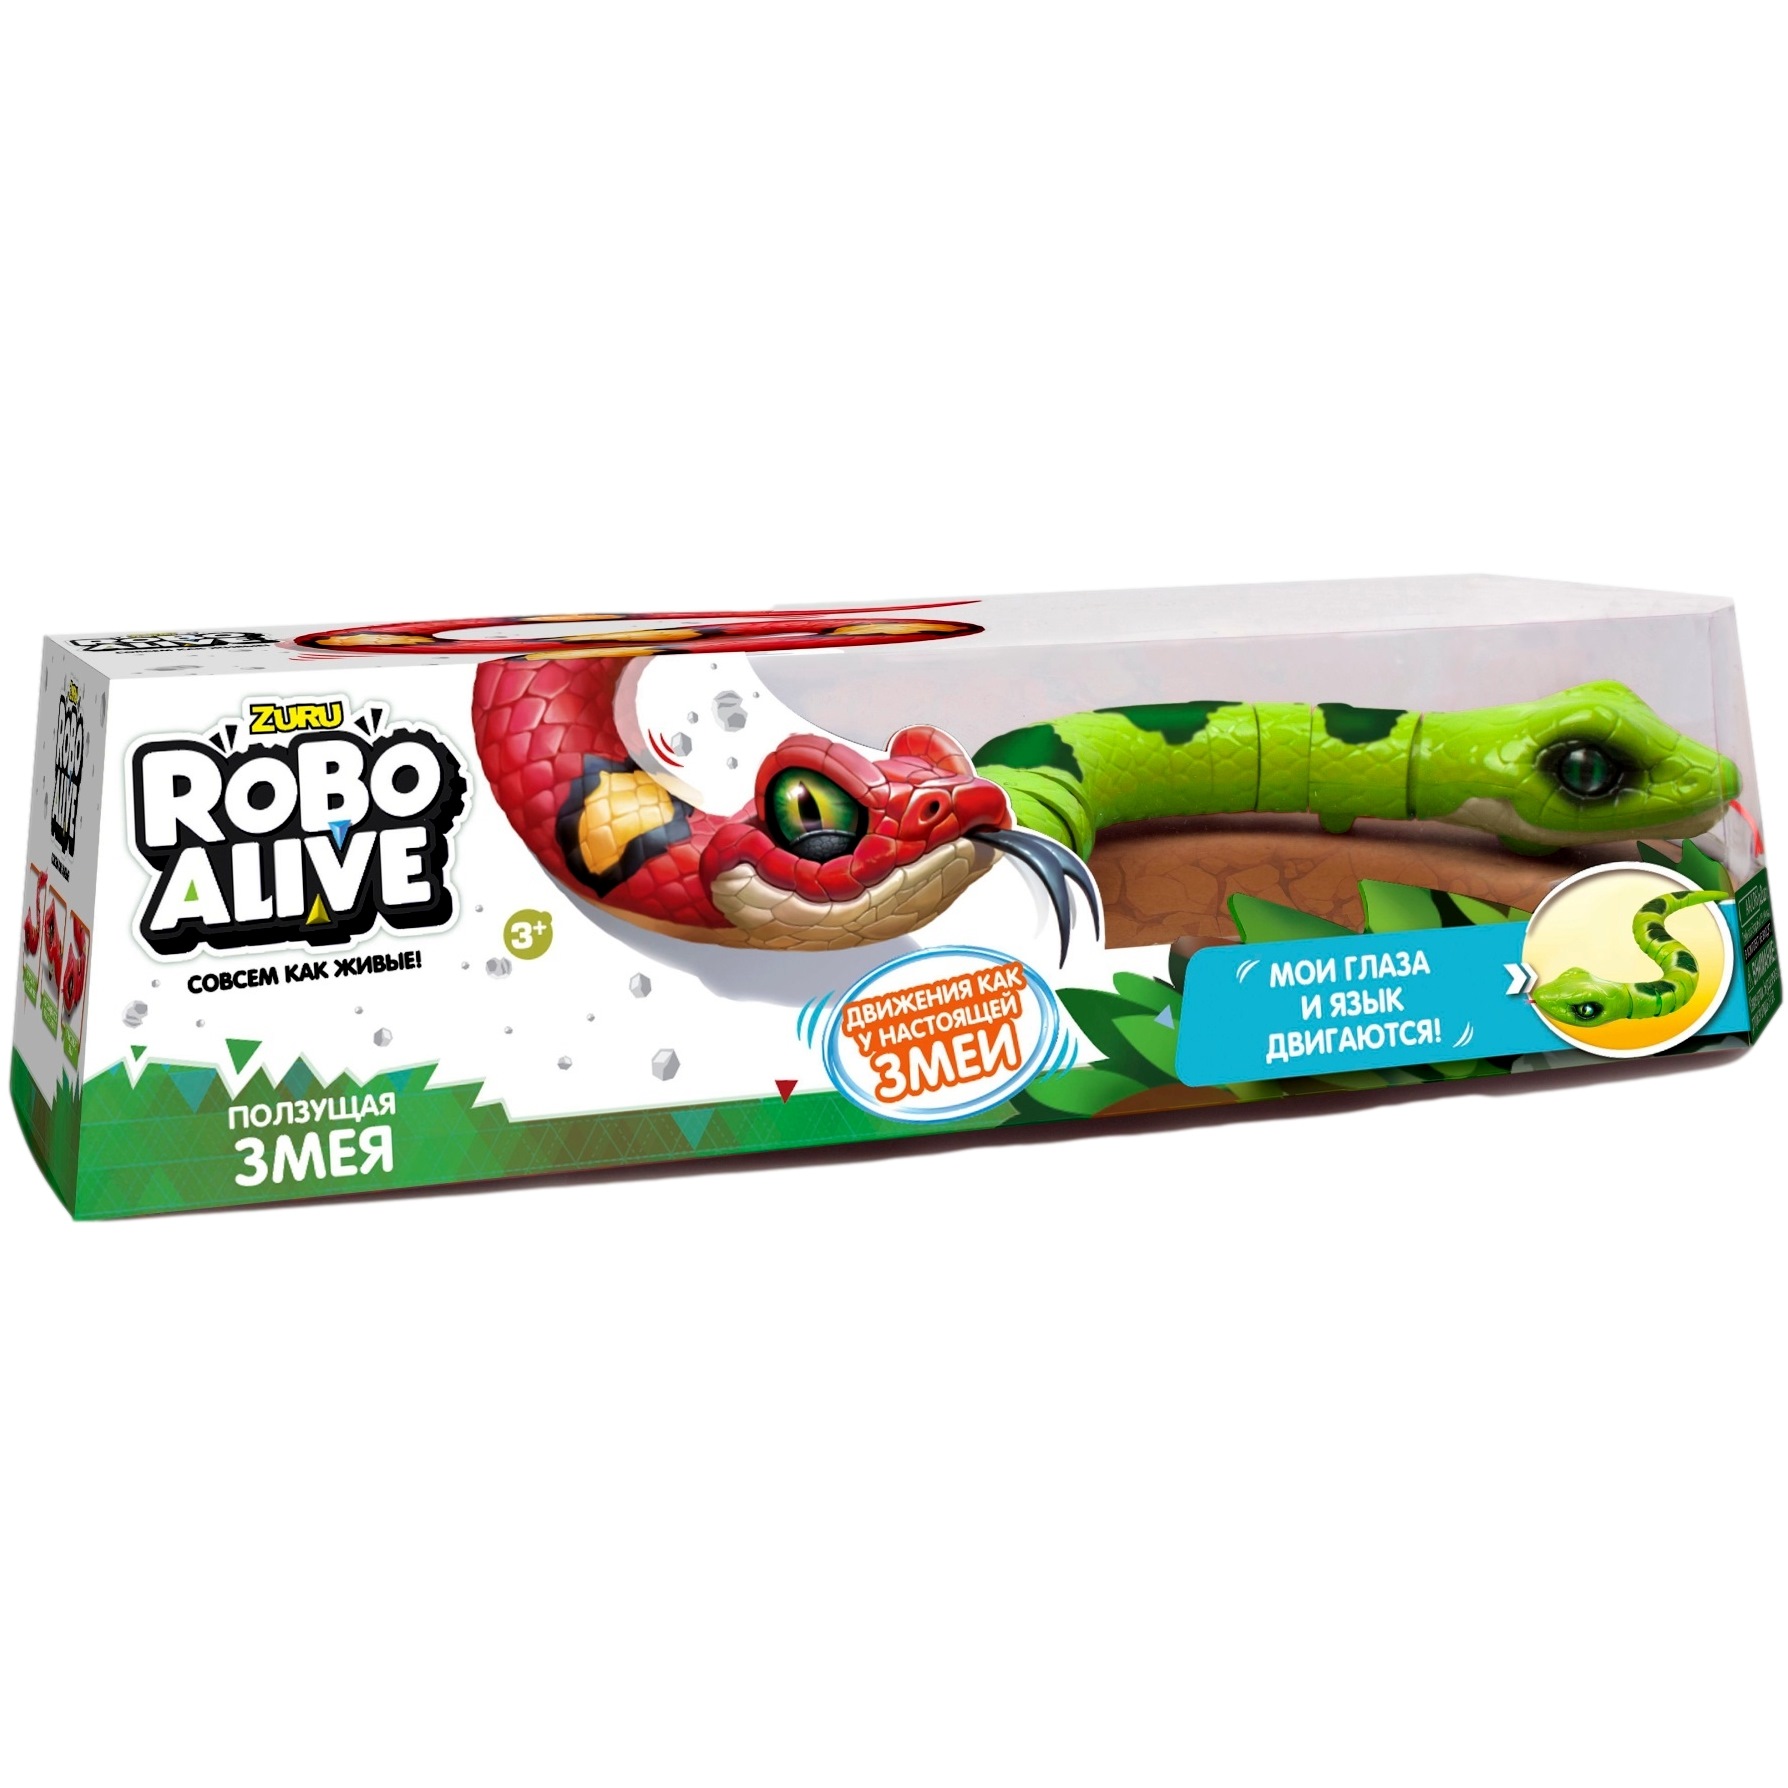 Интерактивная игрушка "Робо-змея" (зеленая, 42 см)